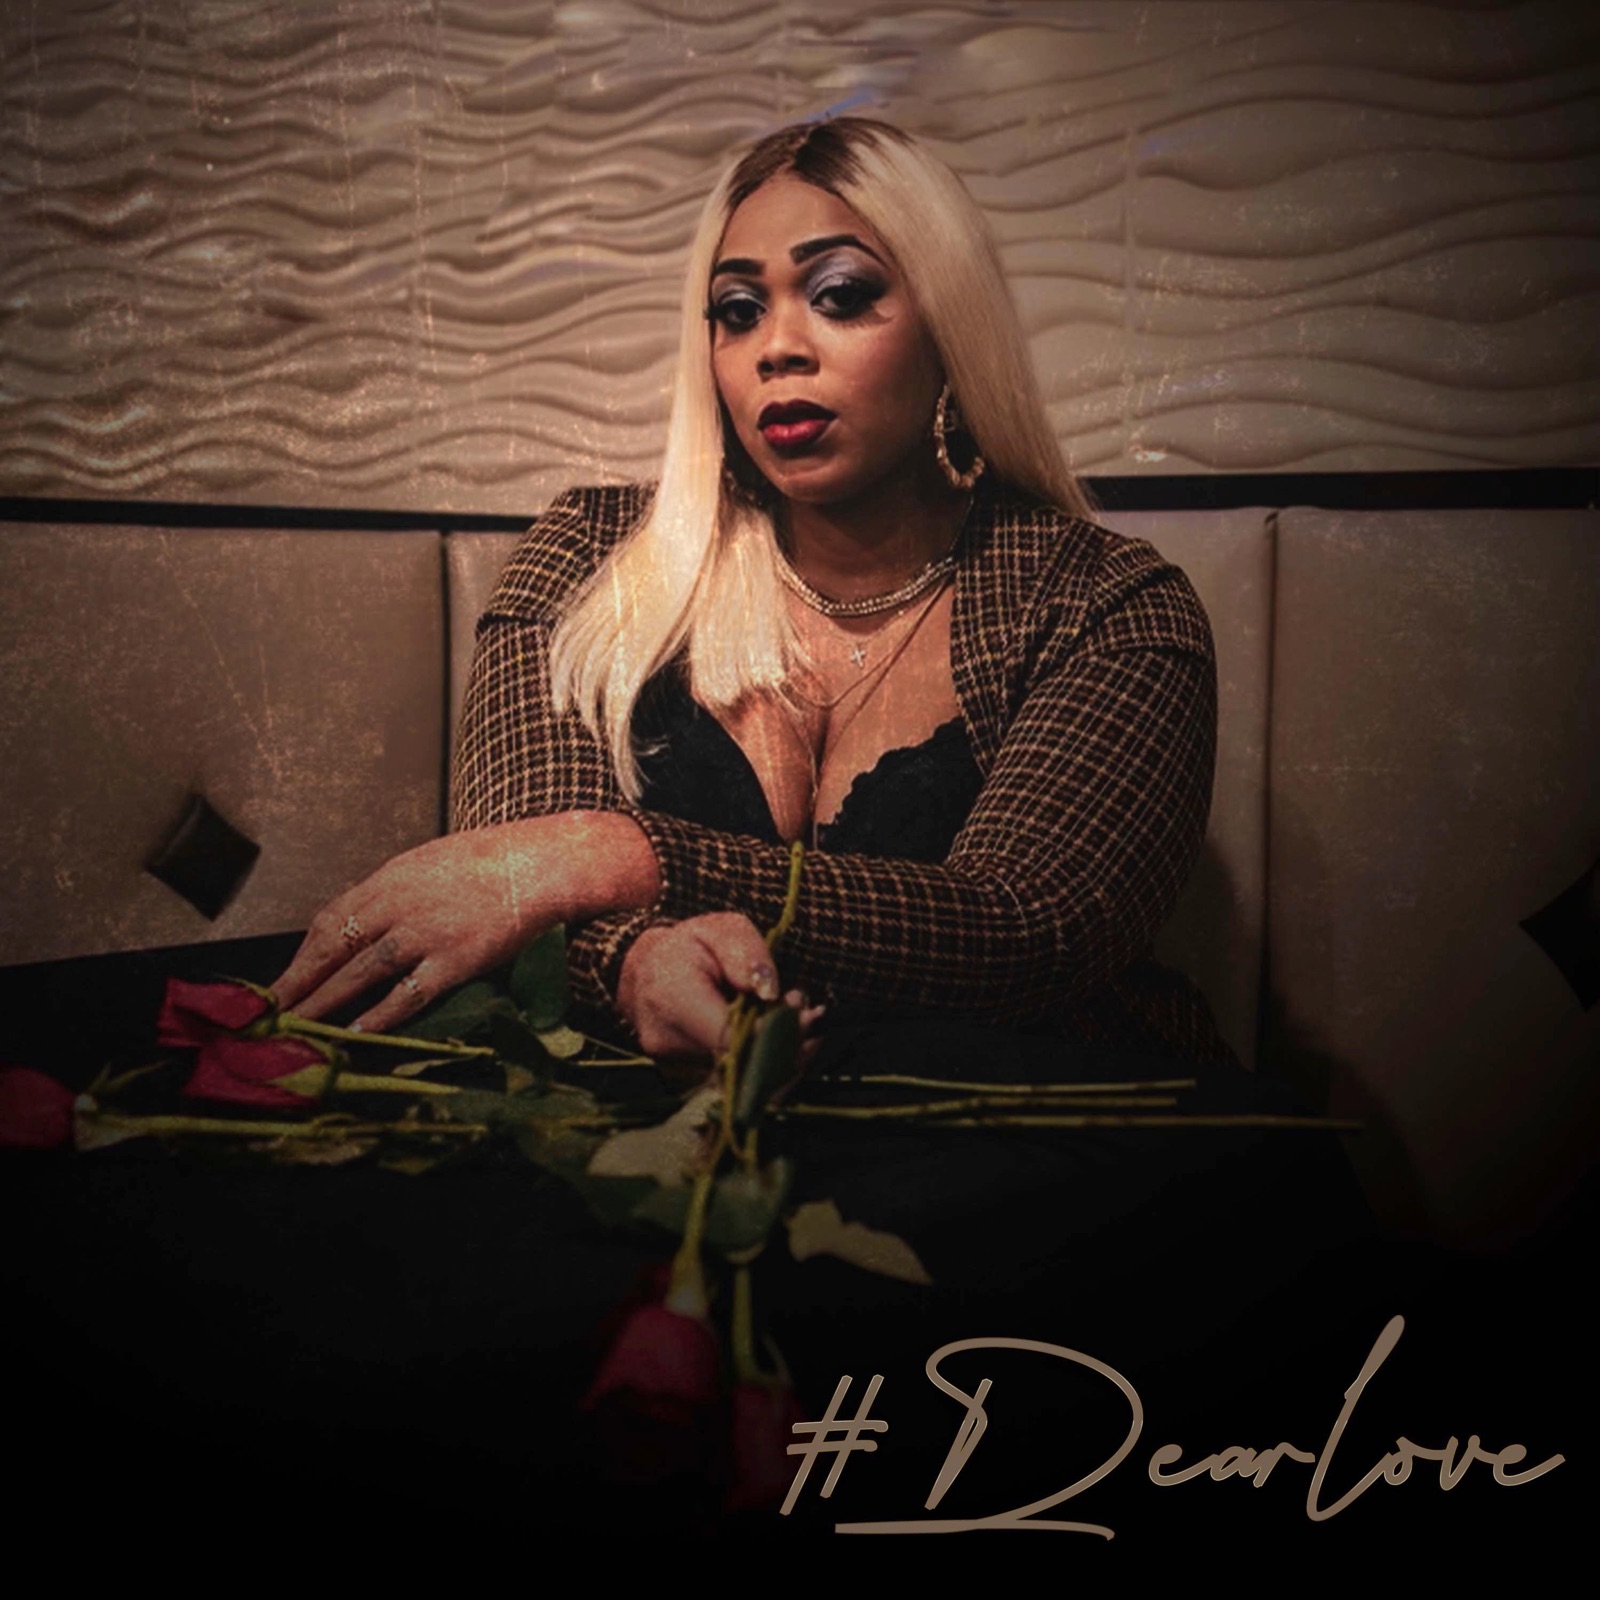 Dear Love - EP